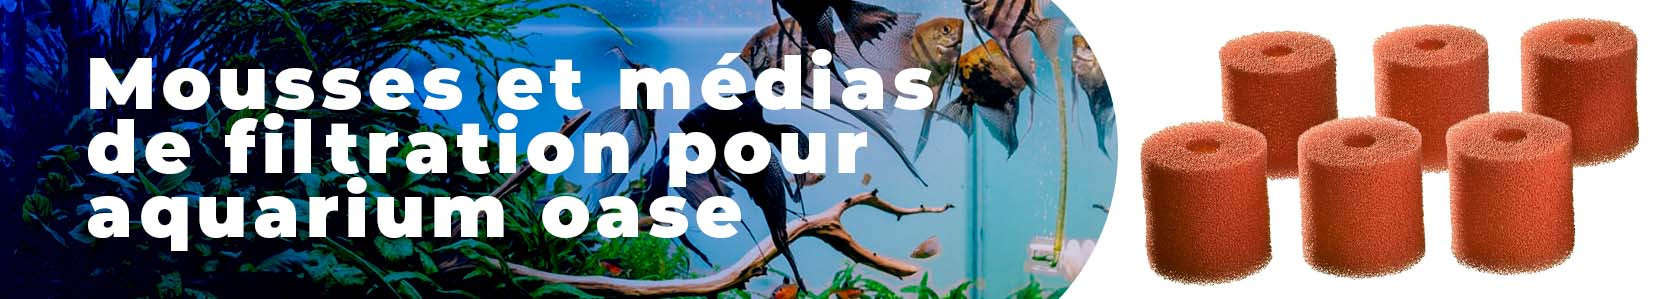 Mousses et médias de filtration pour aquarium oase